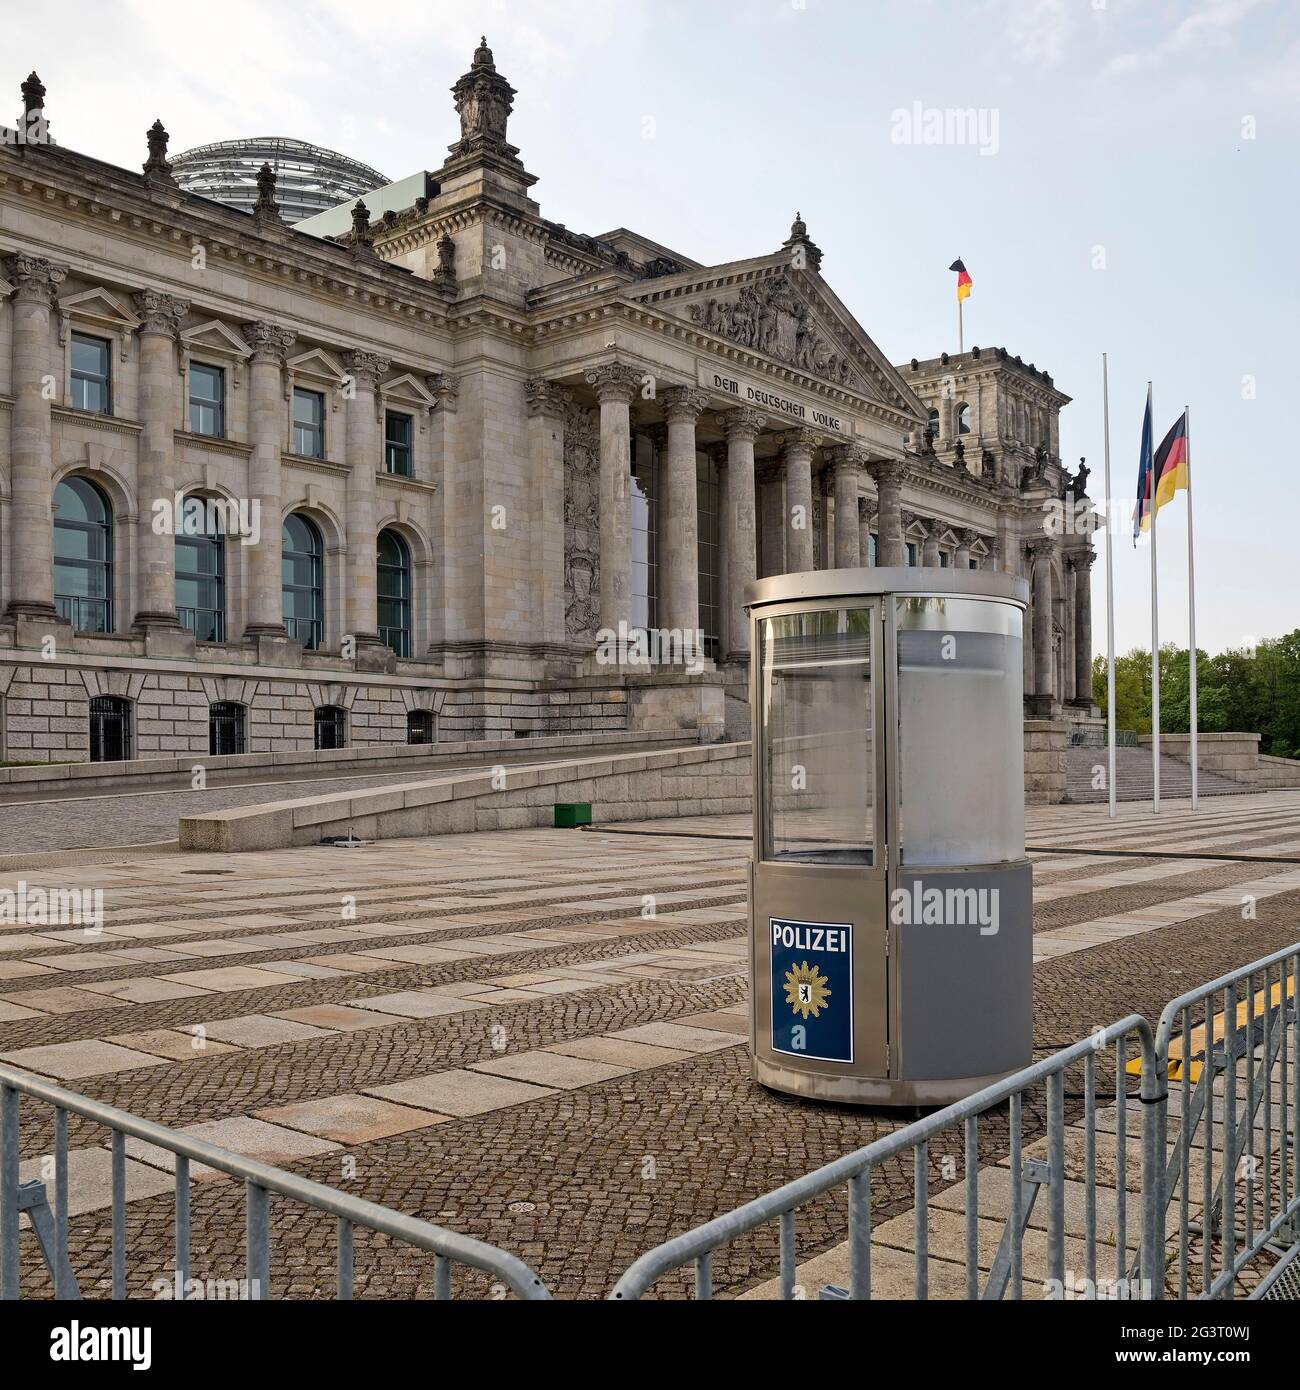 Reichstag edificio sin gente temprano en la mañana, Bundestag alemán en el distrito de gouvernment, Alemania, Berlín Foto de stock